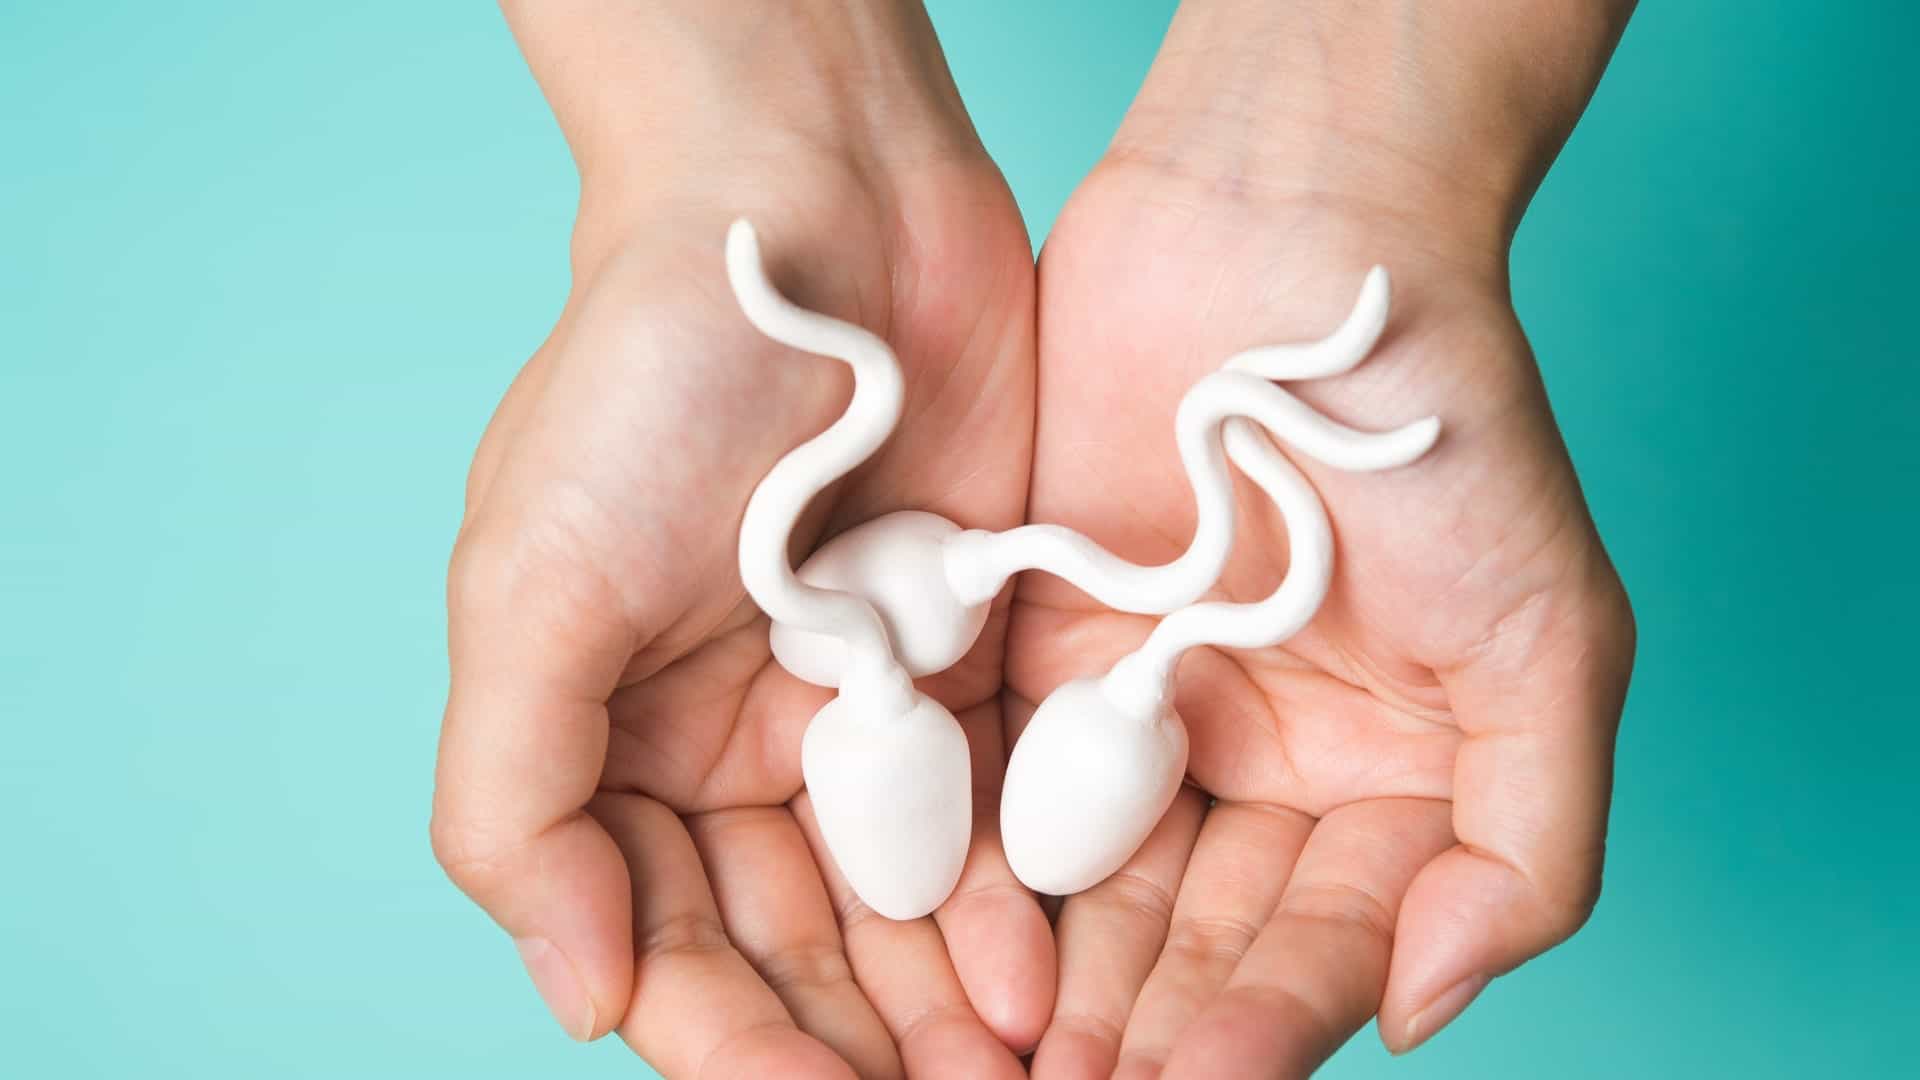 Confuso alla ricerca di cibo per sperma sano? Ecco 8 elenchi completi!